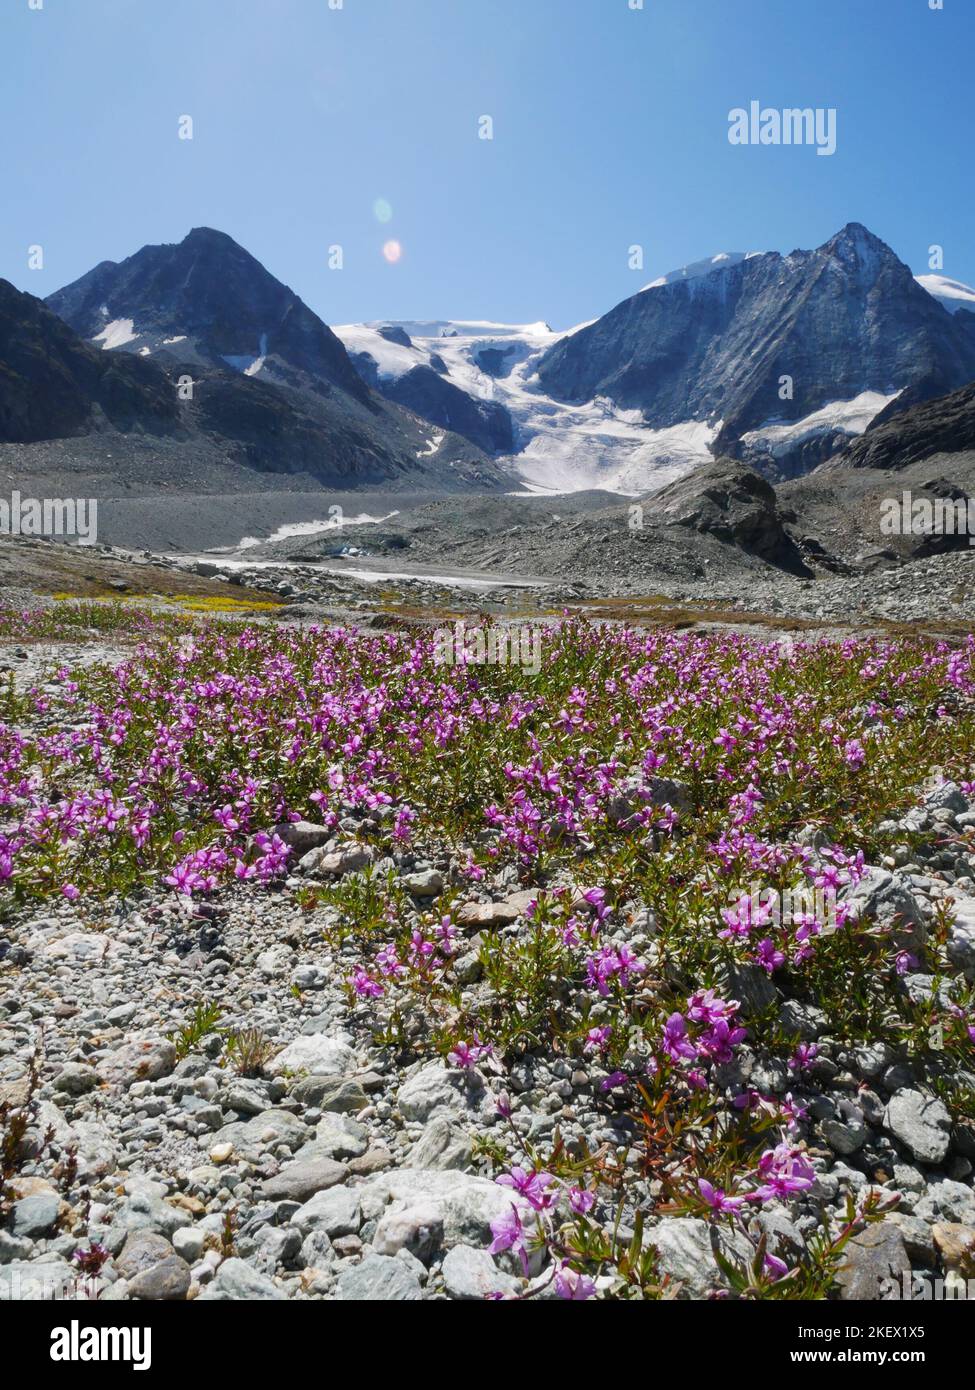 Eine Auswahl von alpinen Blumen, die in den europäischen Alpen gefunden werden. Alle Bilder, die ich selbst gemacht habe, während ich die Natur der Alpen erkundeten und entdeckten. Stockfoto